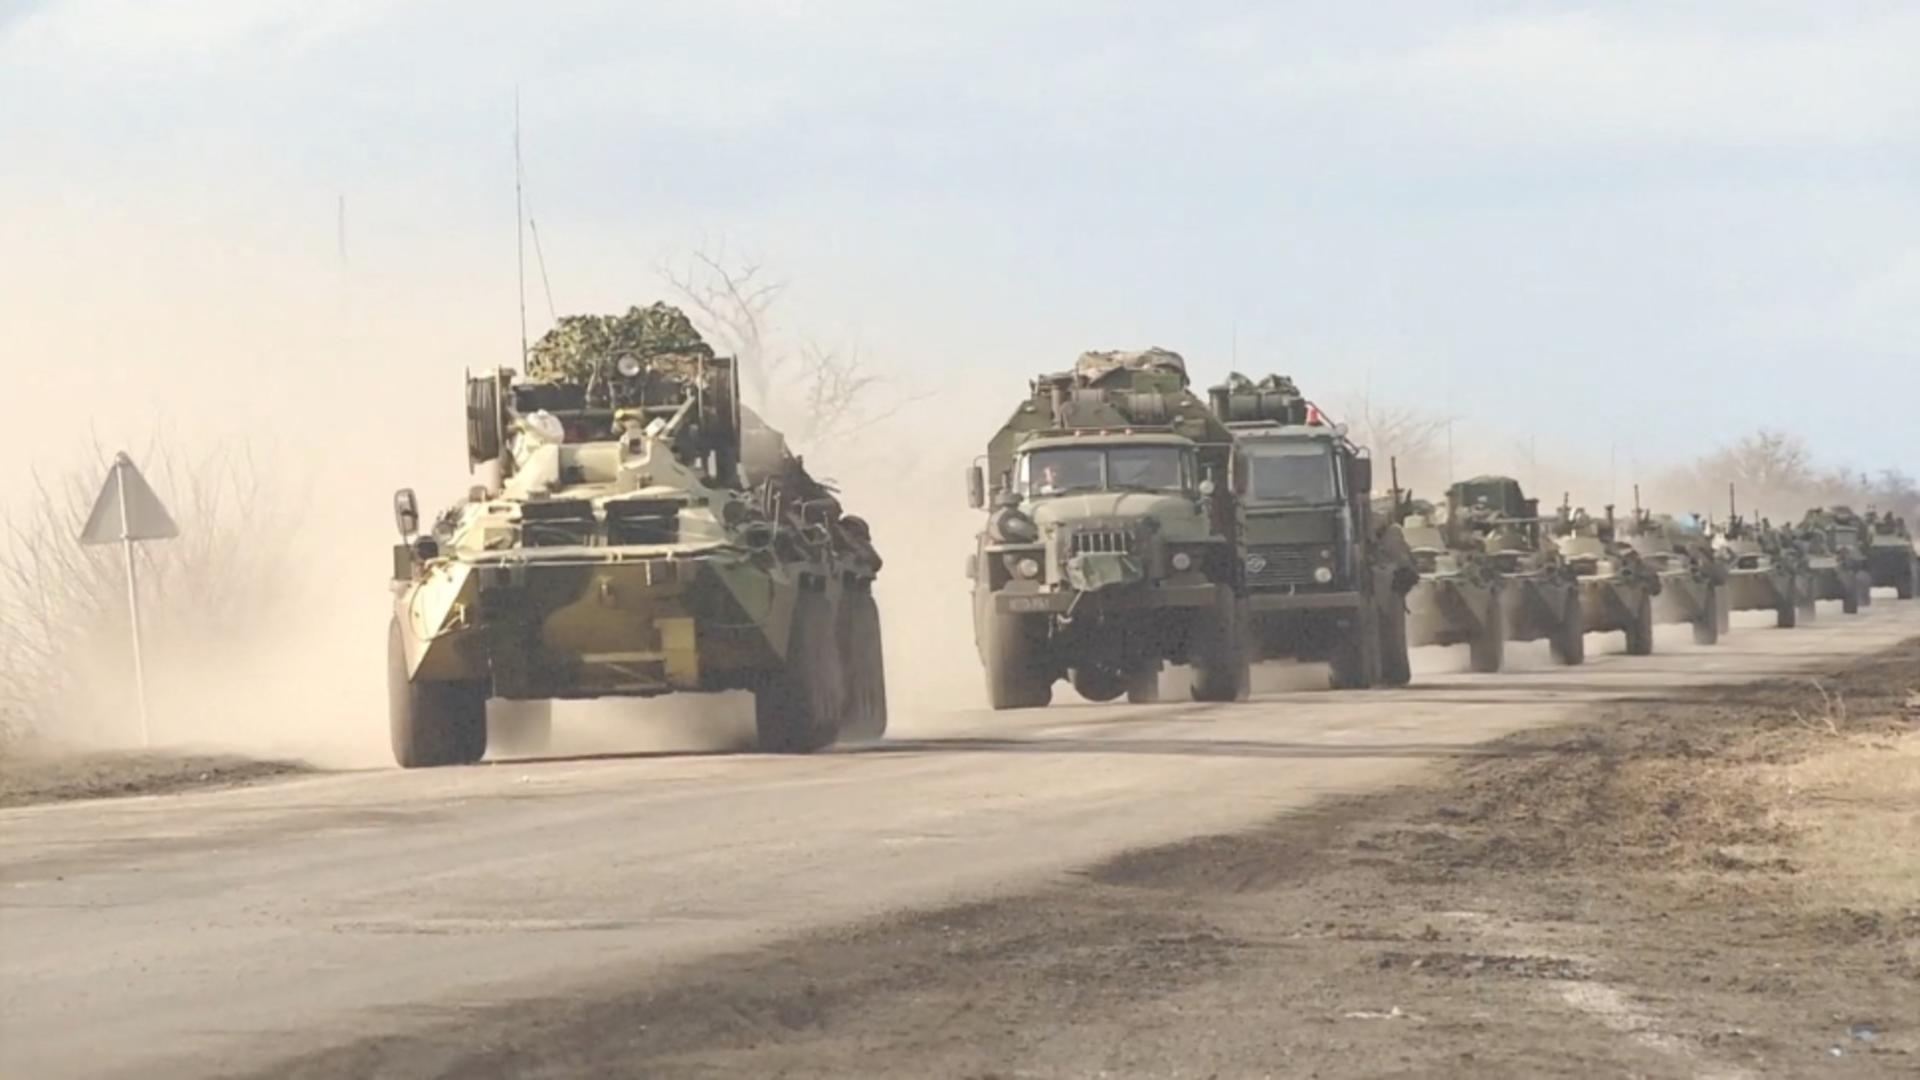 VICTORIE uriașă pentru Ucraina: armata rusă, nimicită! Obiectiv militar strategic, pulverizat / Foto: Profi Media